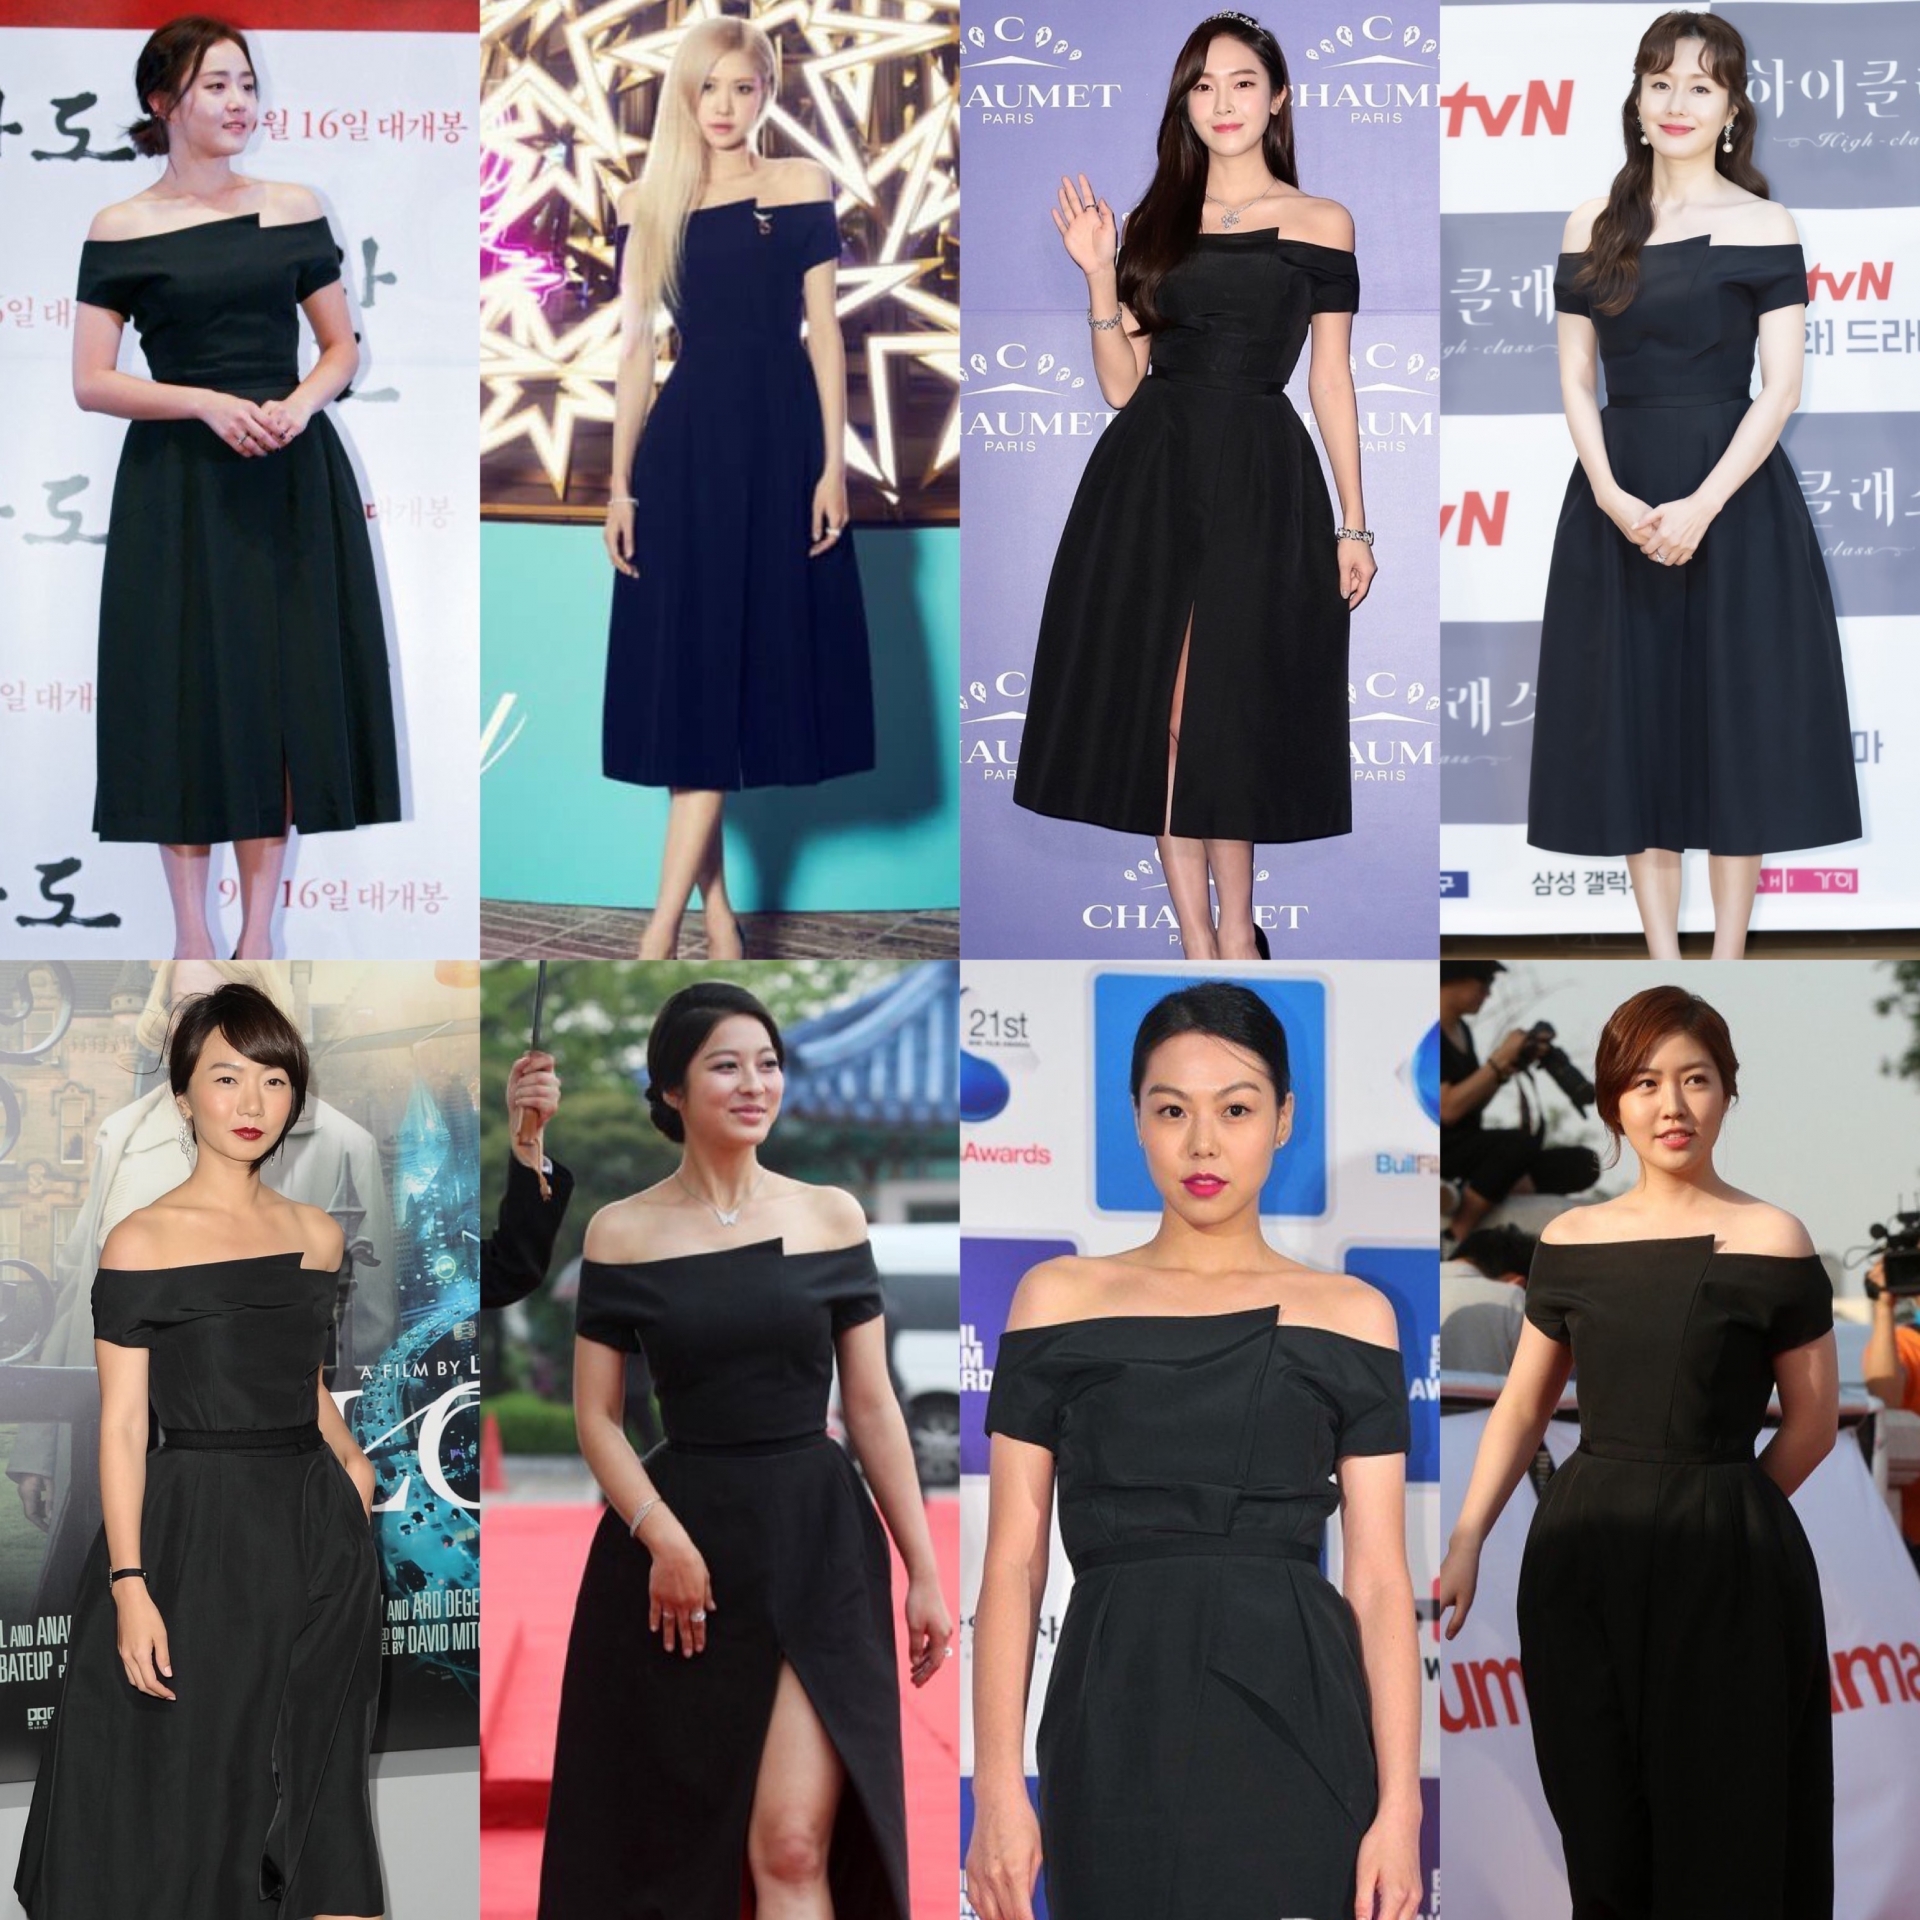 Chiếc váy đen trễ vai đơn giản nhưng được 8 mỹ nhân xứ Hàn thi nhau diện trong suốt gần 10 năm nay. Mặc dù có những cách mix and match khác nhau nhưng nhìn chung các sao nữ đều trông rất xinh đẹp.